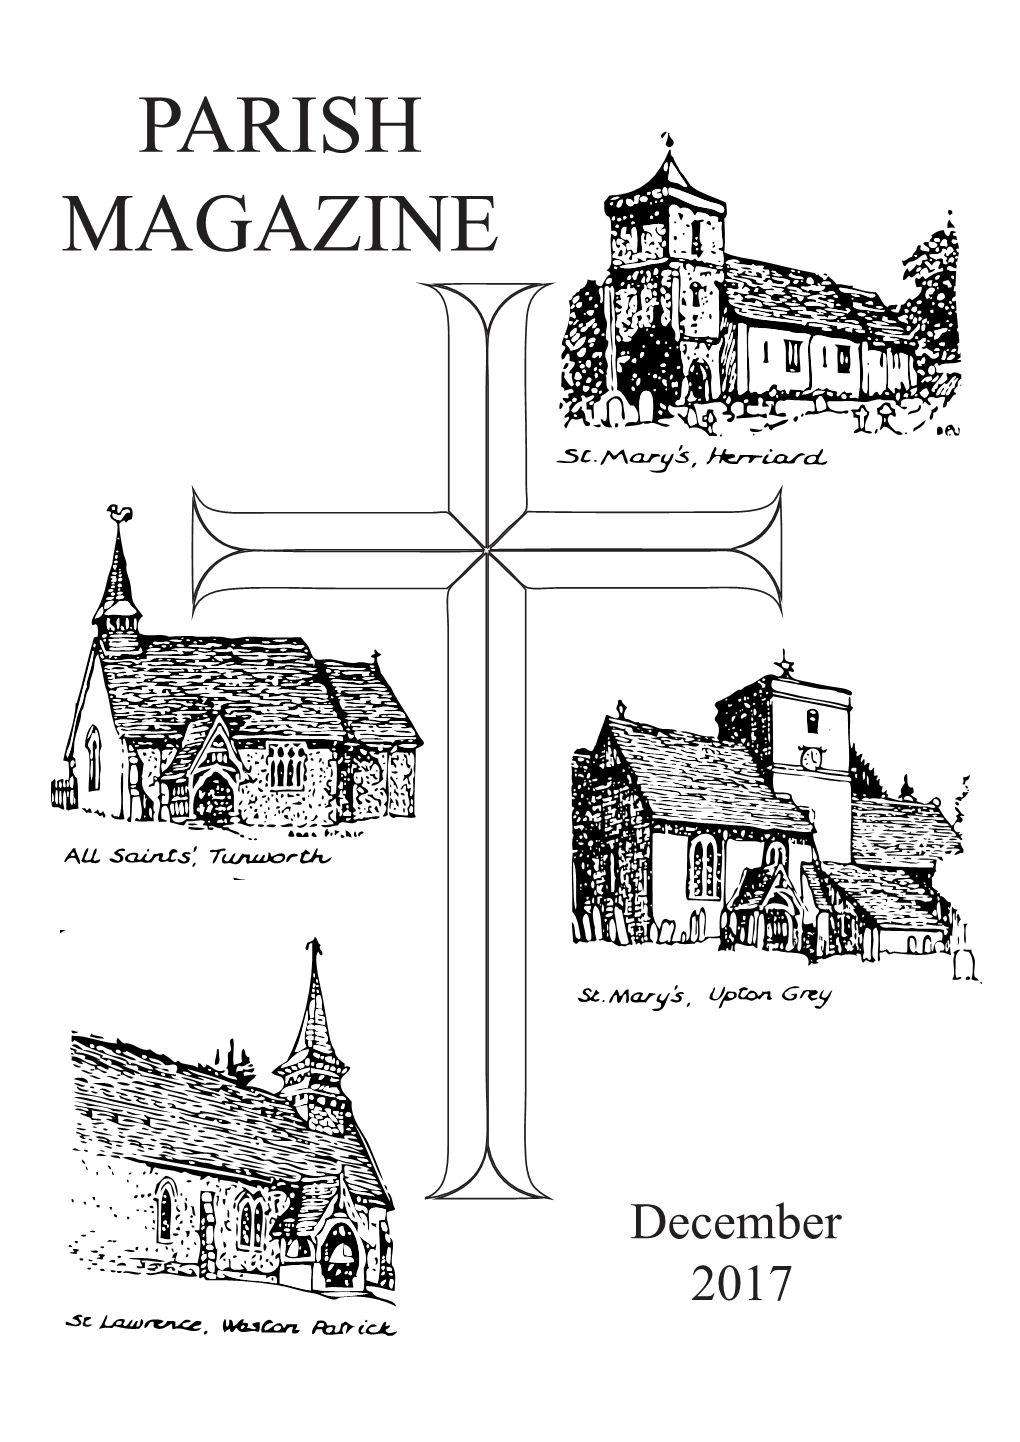 Parish Magazine December 2017